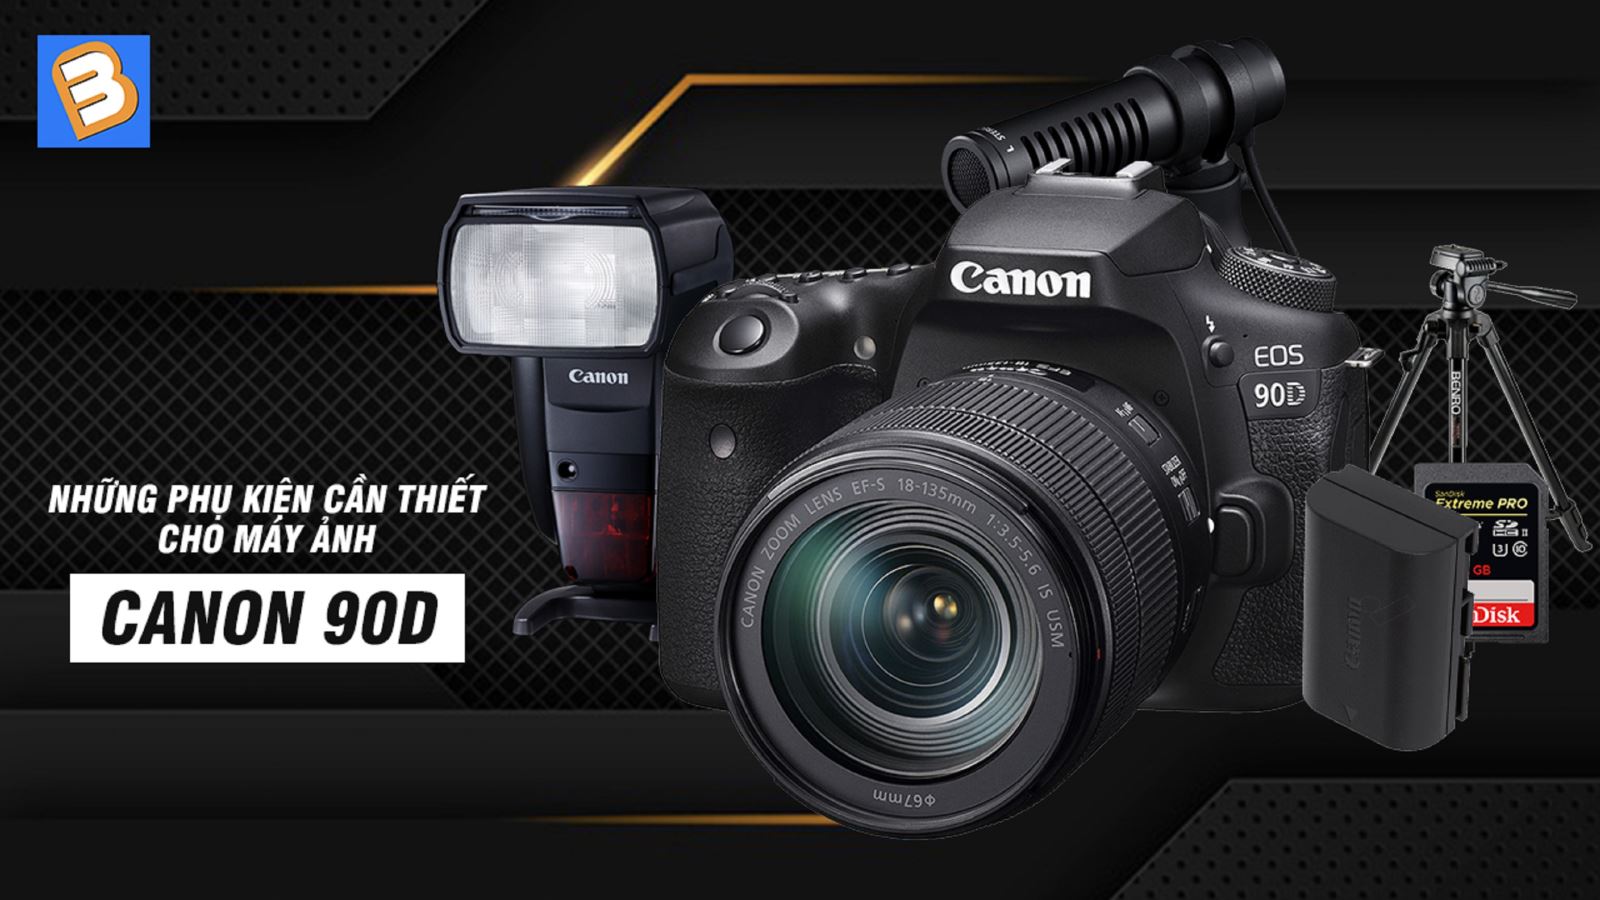 Những phụ kiện cần thiết cho máy ảnh Canon 90D